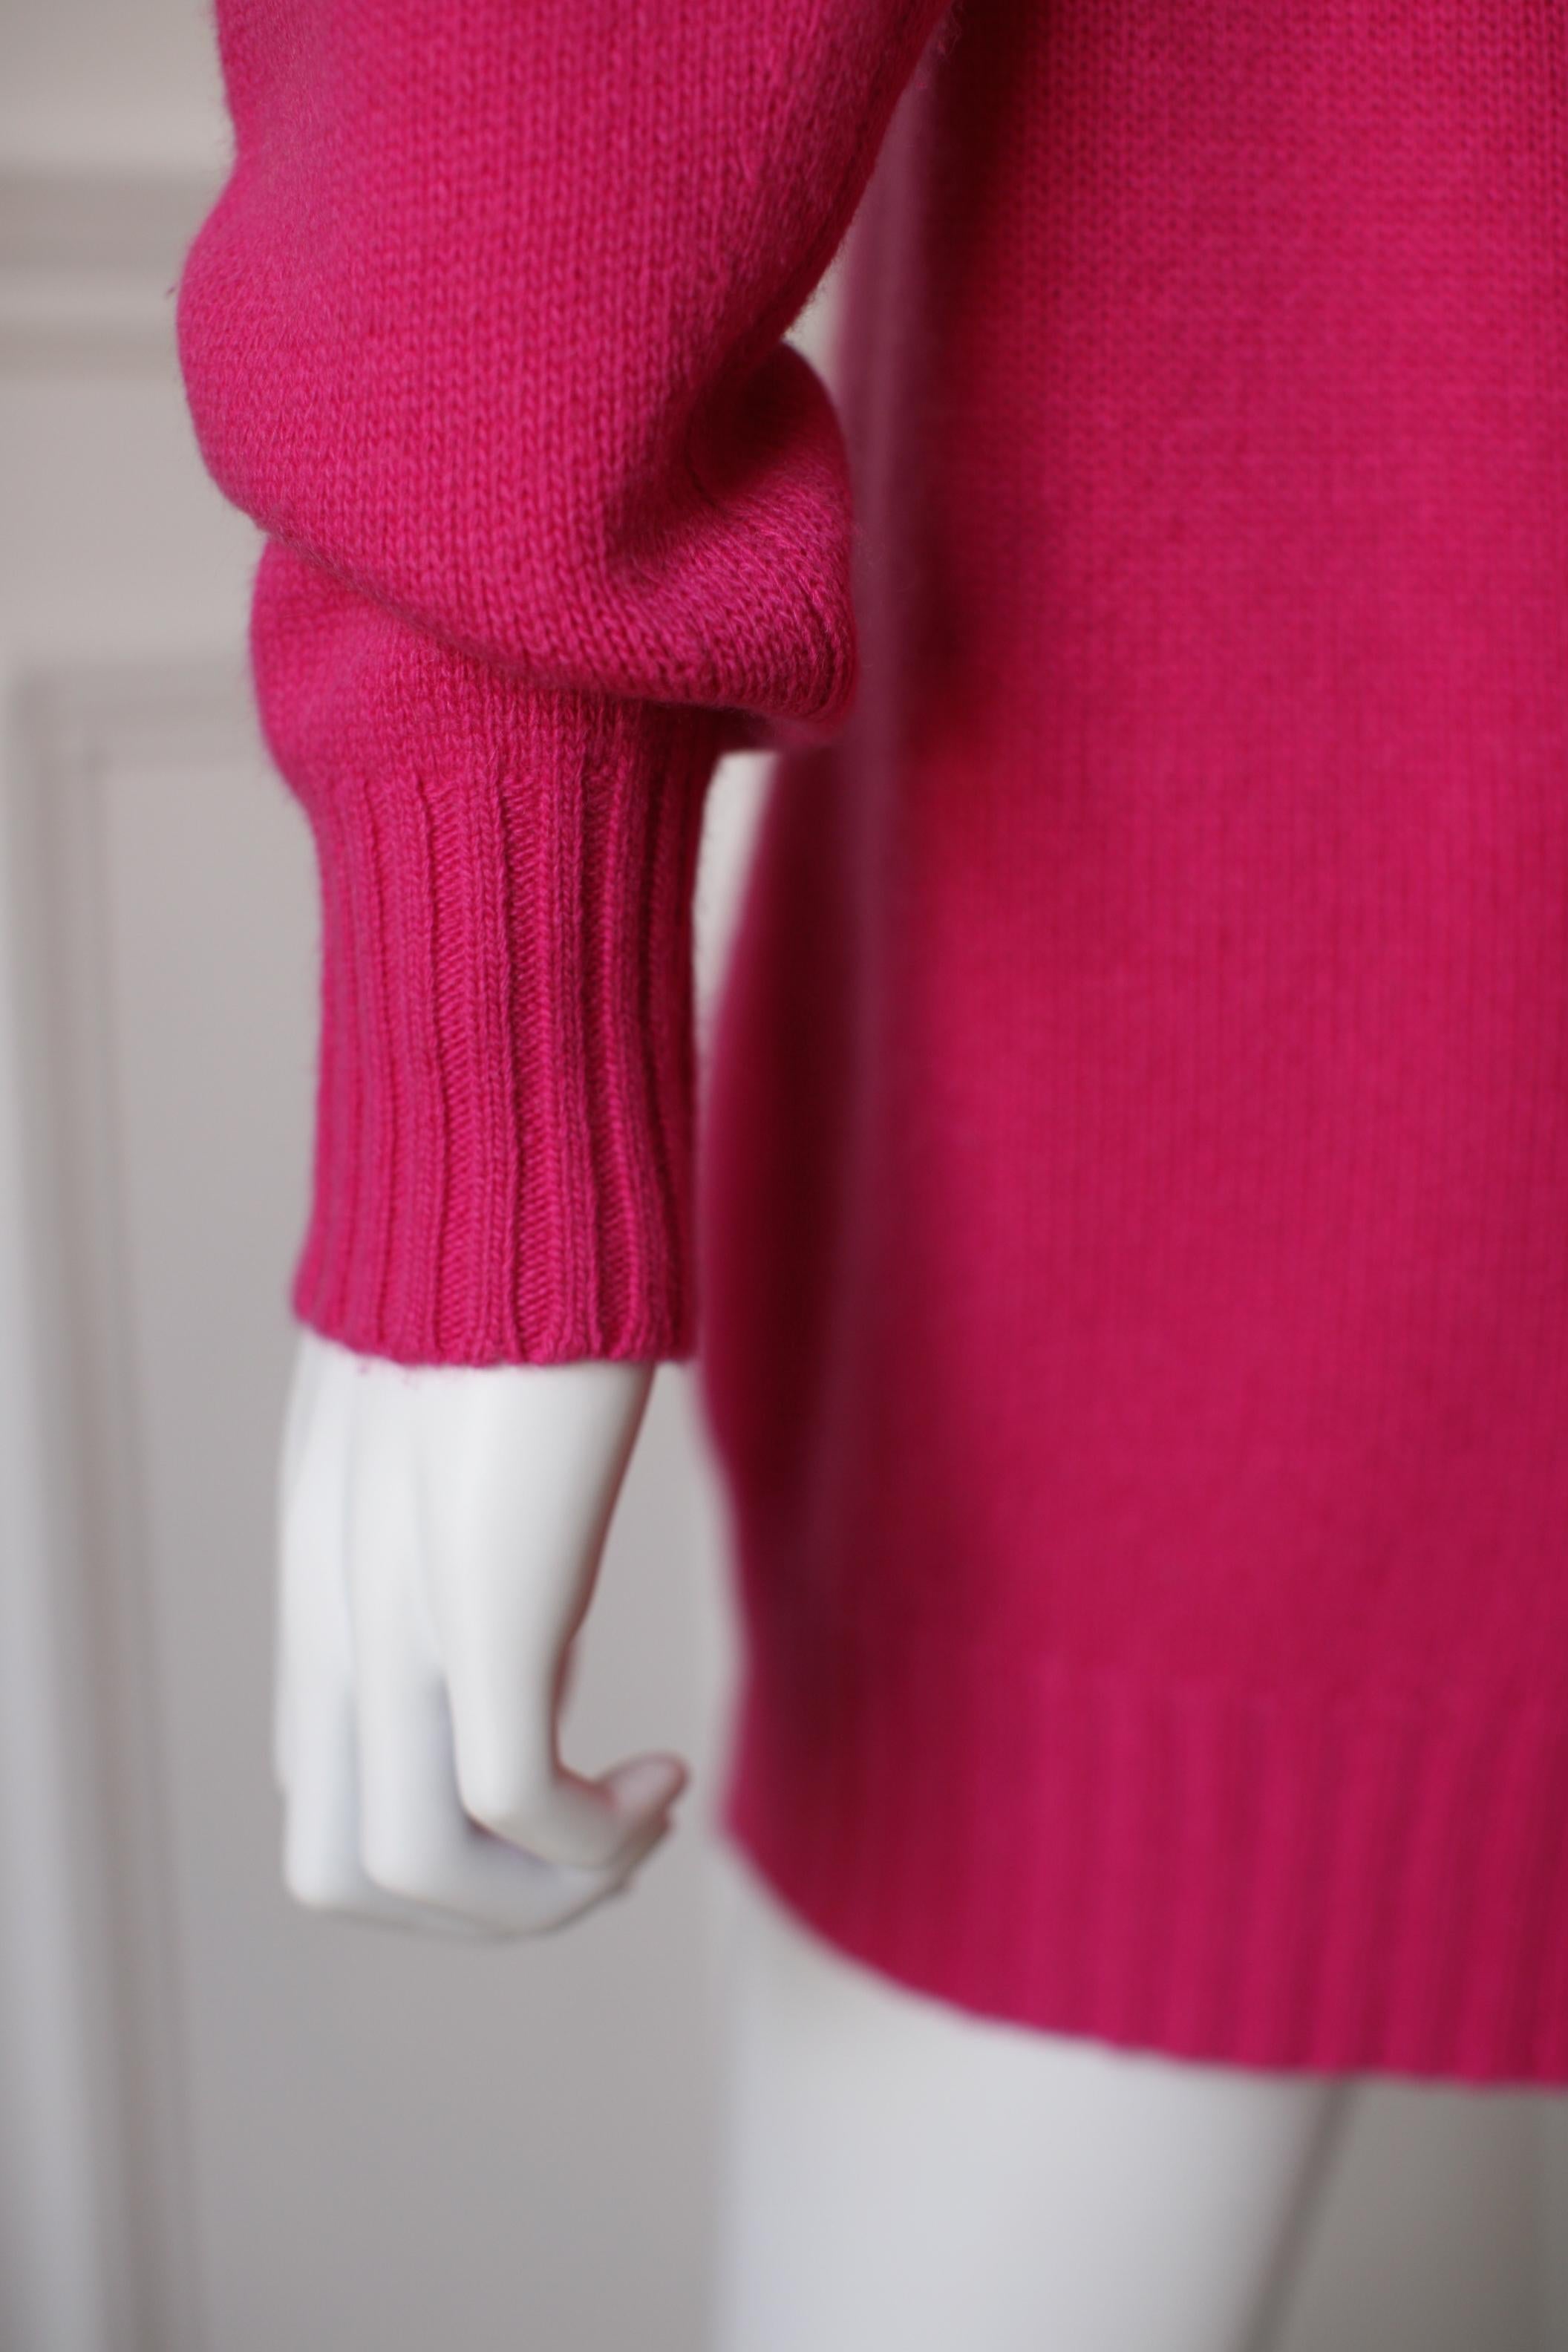 Saint Laurent Pink Cashmere Medium Size 2